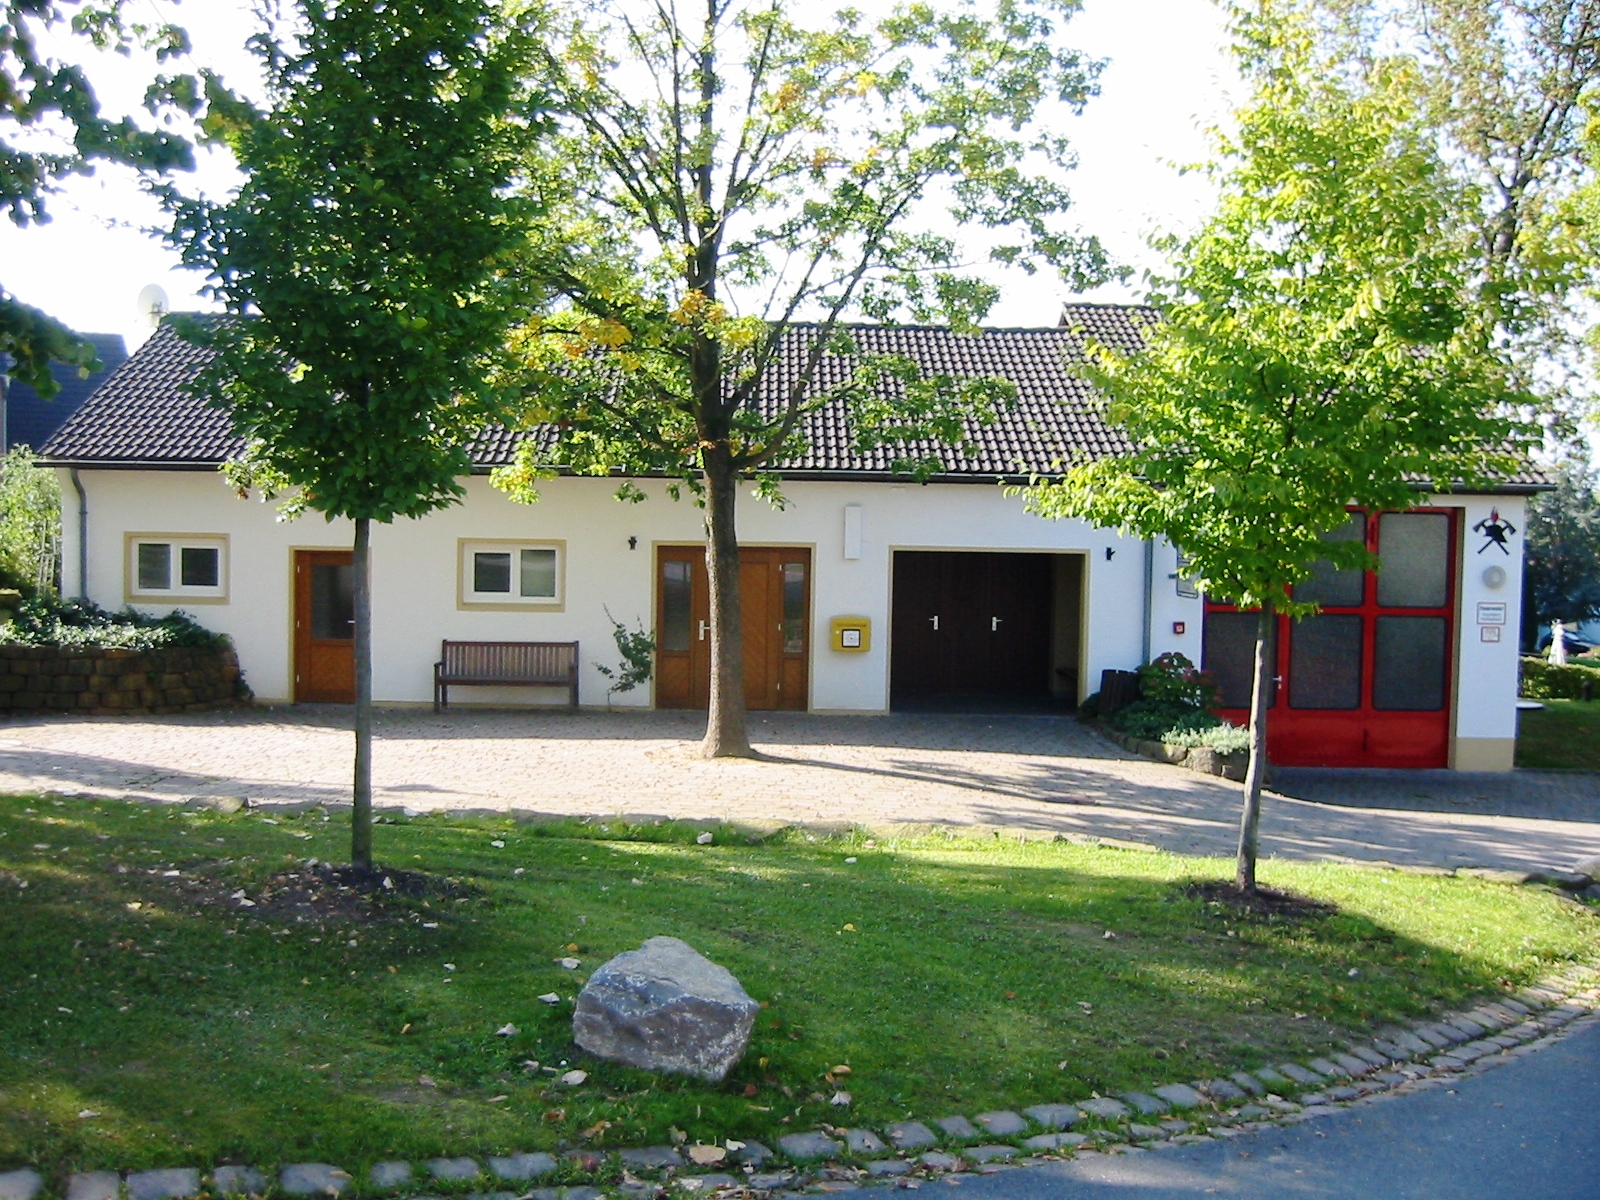 
    
            
                    Feuerwehrgeräte- und Dorfgemeinschaftshaus
                
        
